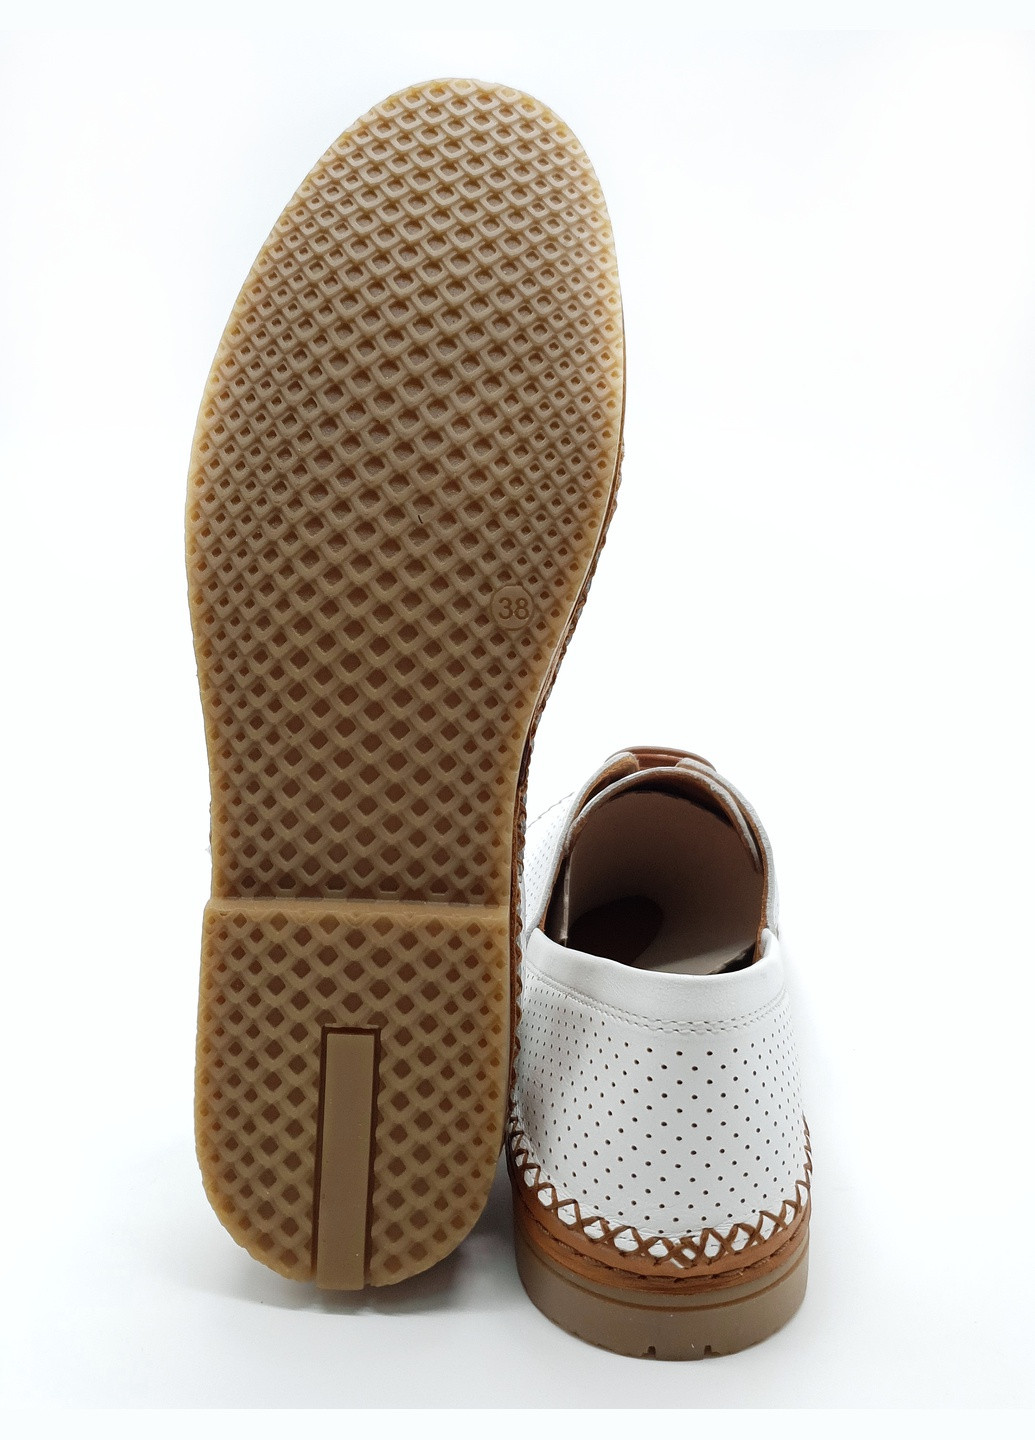 Женские туфли белые кожаные OS-17-4 24 см (р) Osso